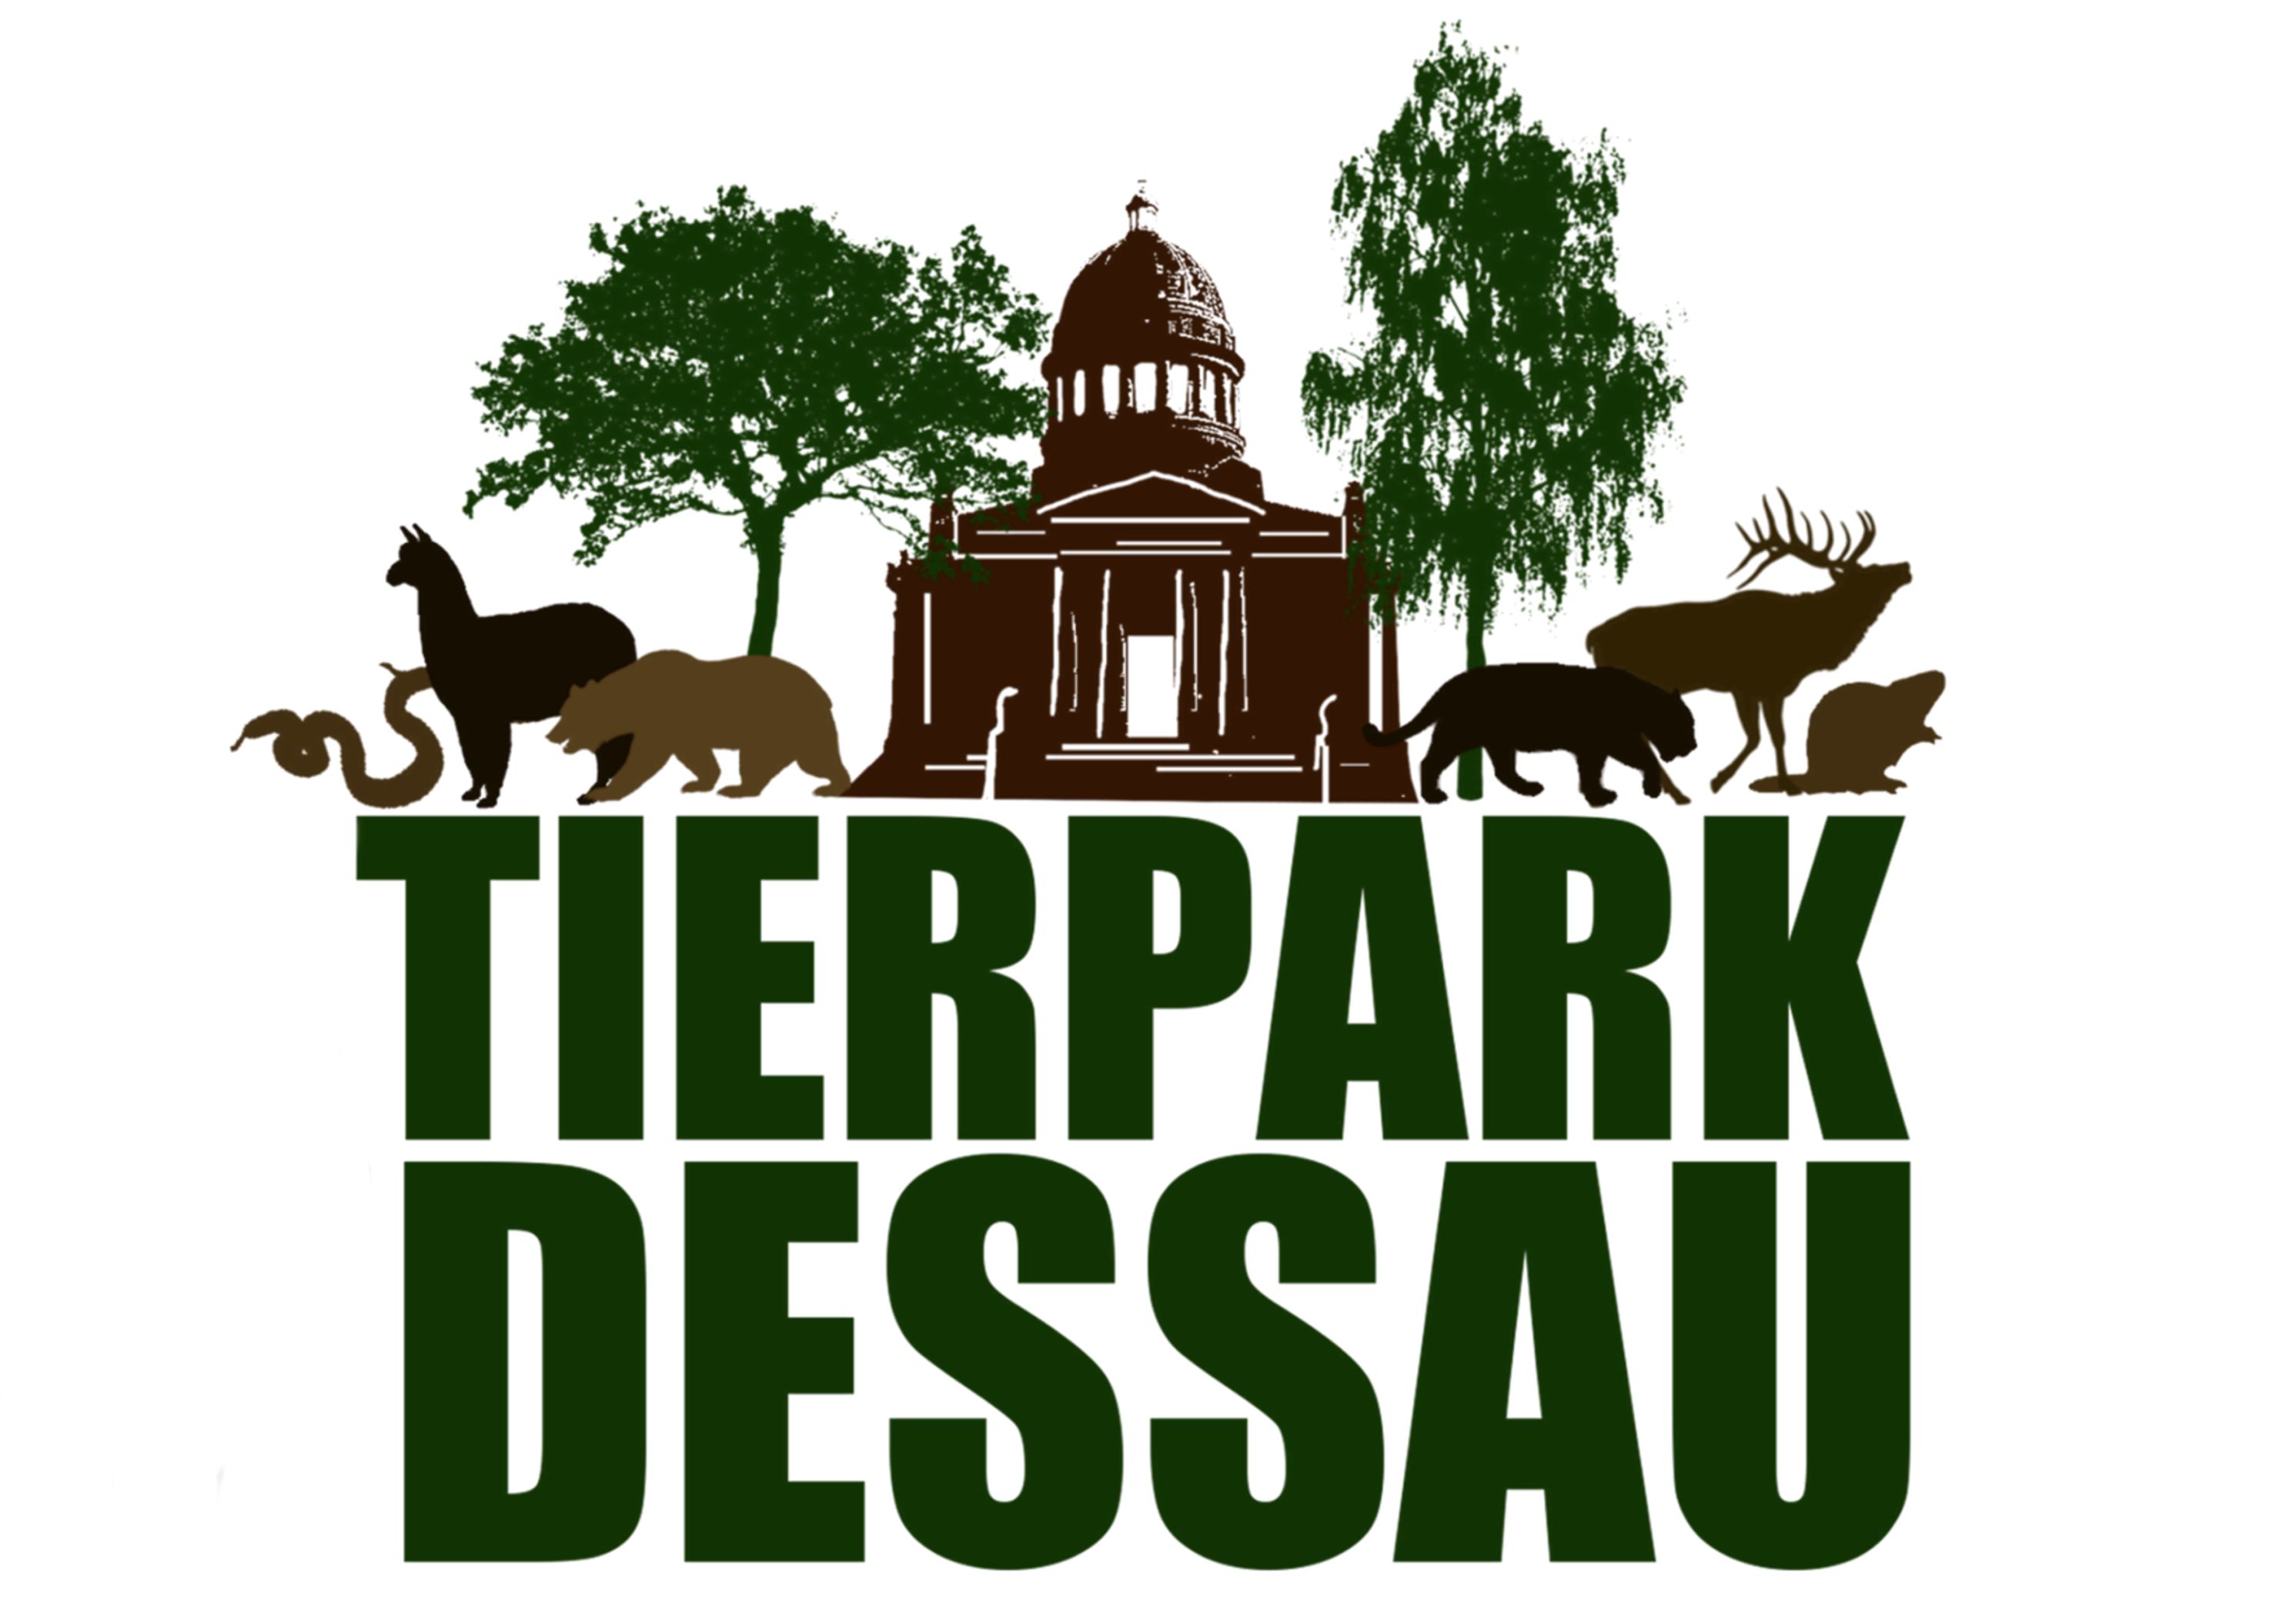 Tierpark Dessau